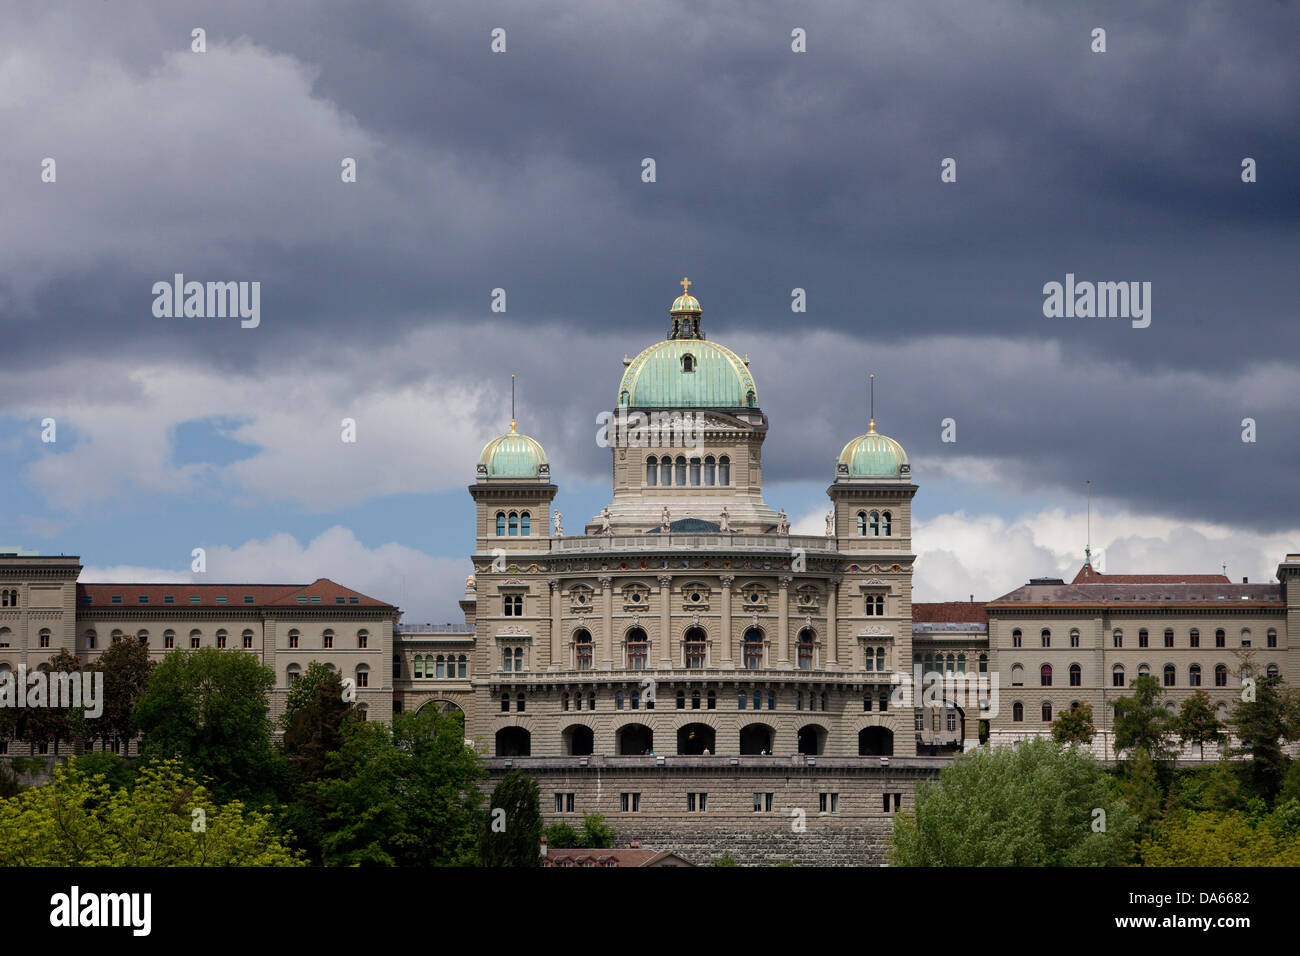 Parlamento federale, Berna, la costruzione, la costruzione, meteo, nuvole, cloud, Canton Berna, Svizzera, Europa, il Parlamento, a cupola, Foto Stock